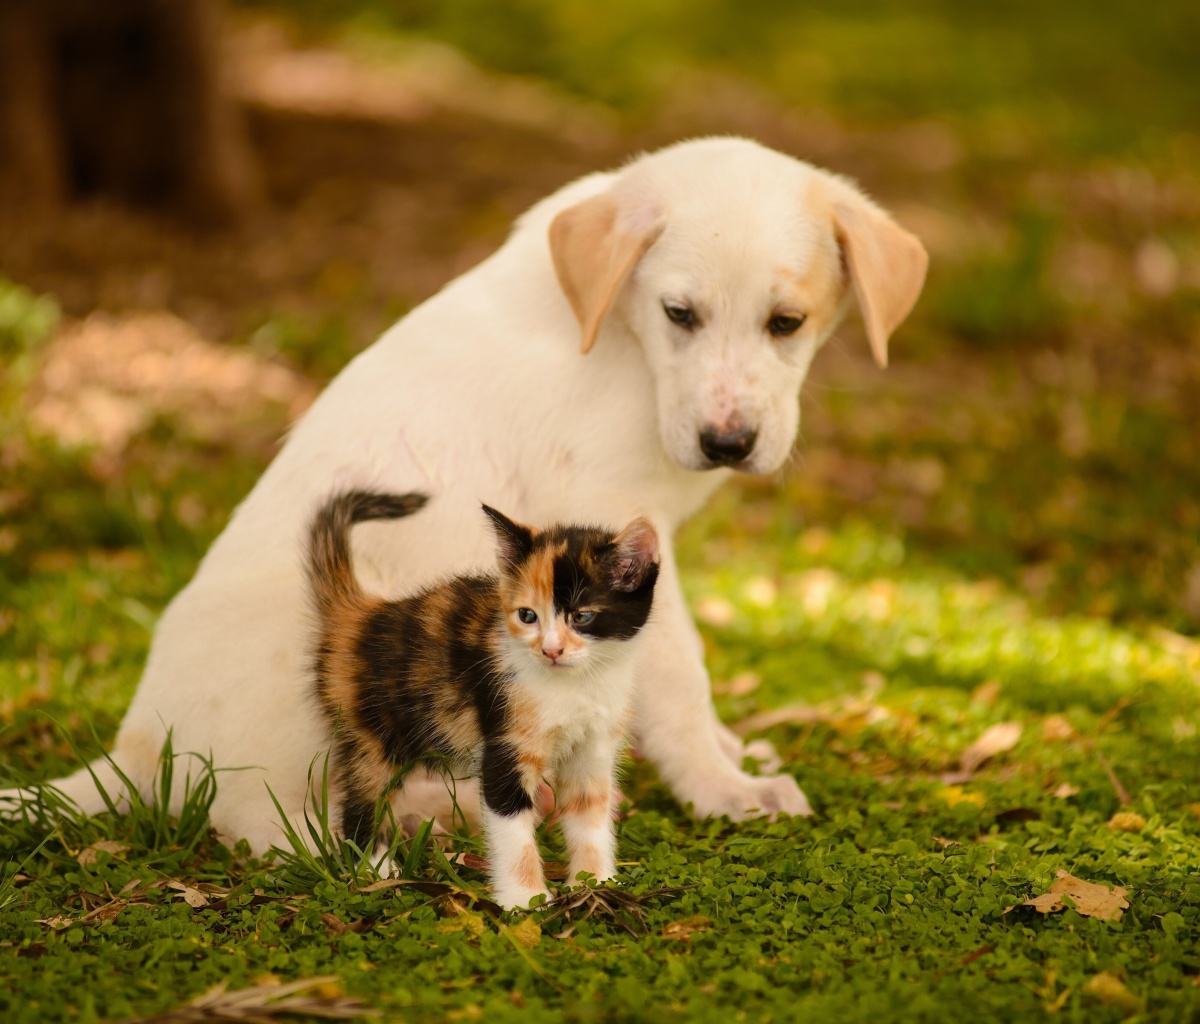 Puppy and Kitten wallpaper 1200x1024